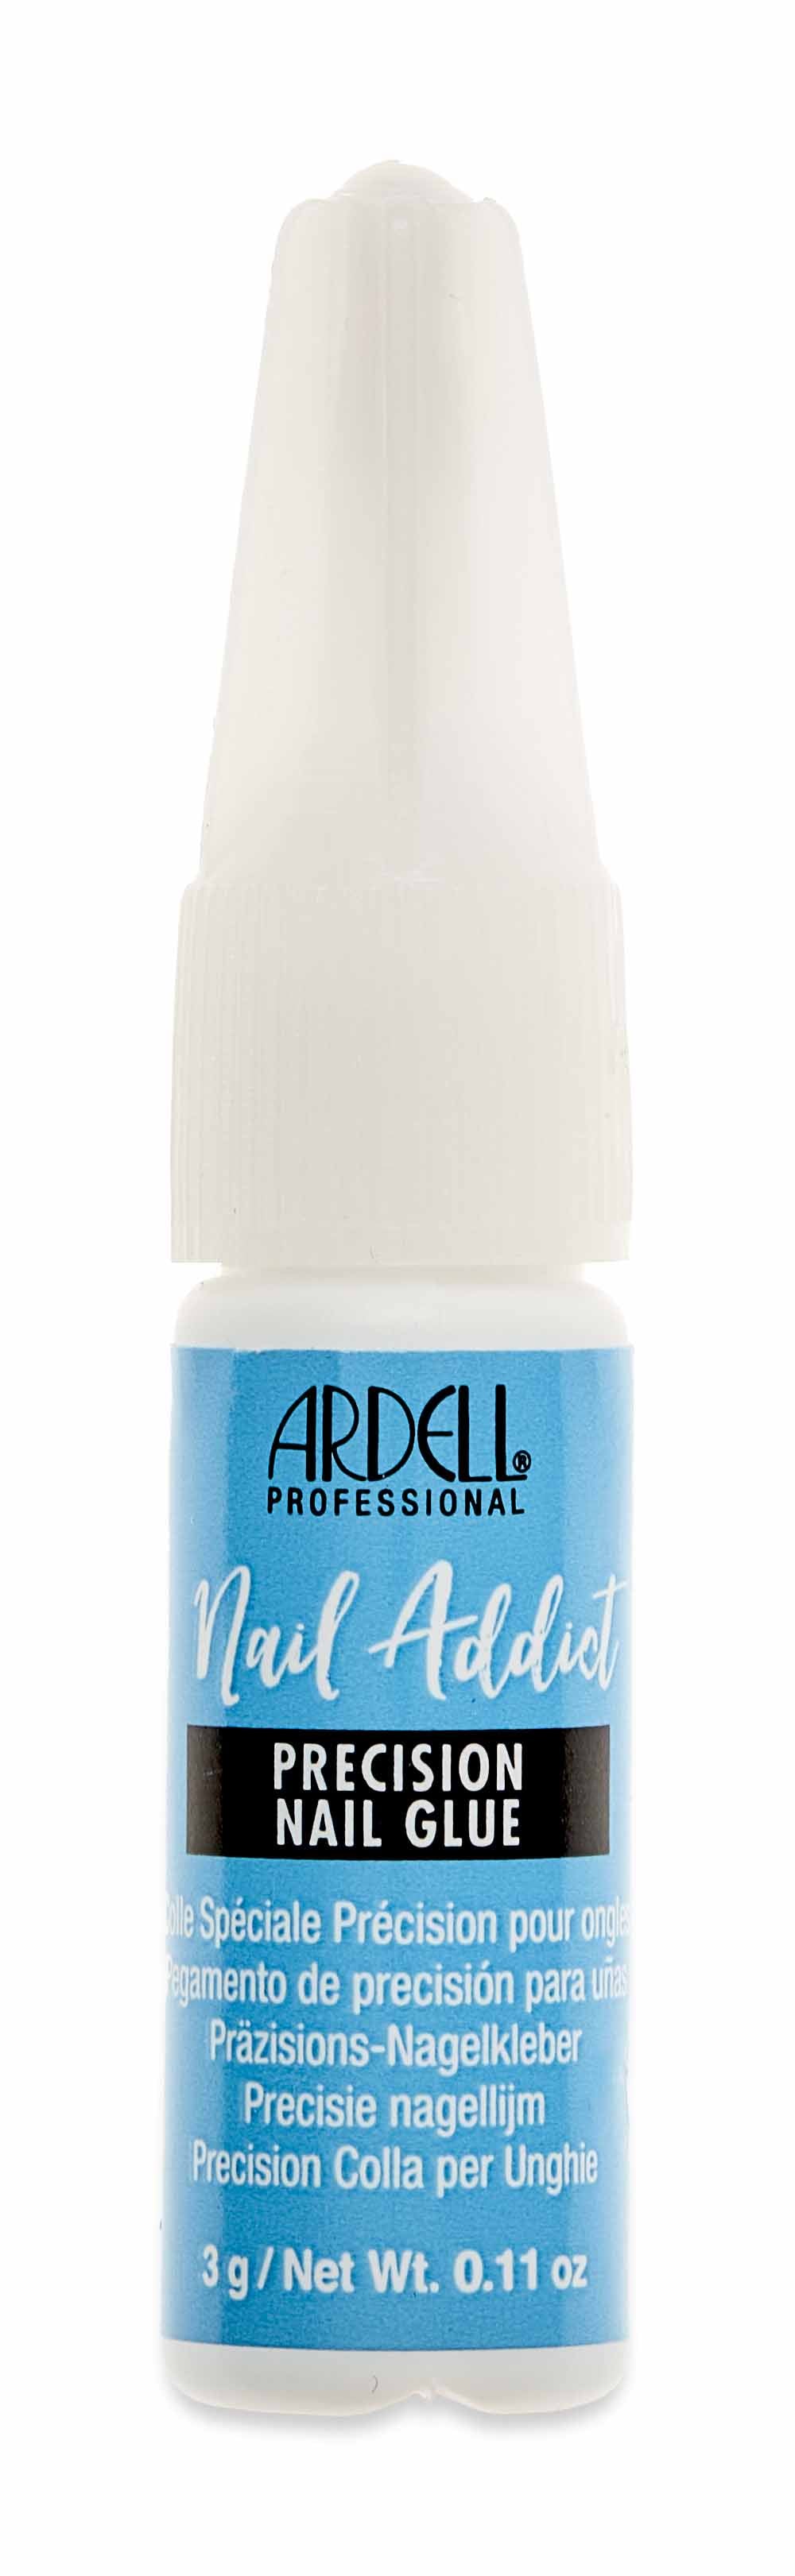 Ardell Nail Addict Precision Nail Glue. 3g